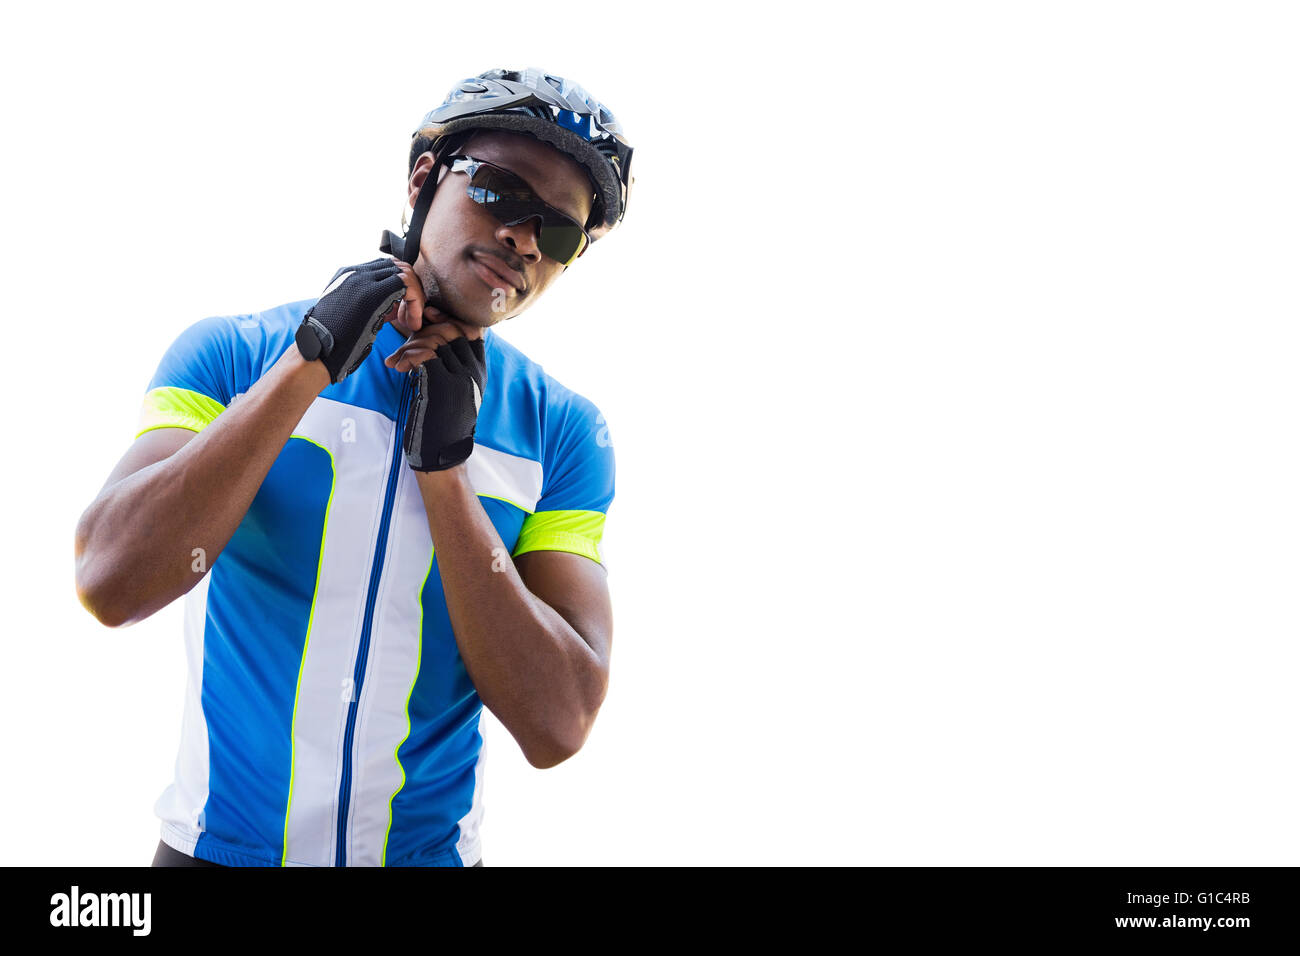 L'homme athlétique de mettre son casque de vélo Banque D'Images